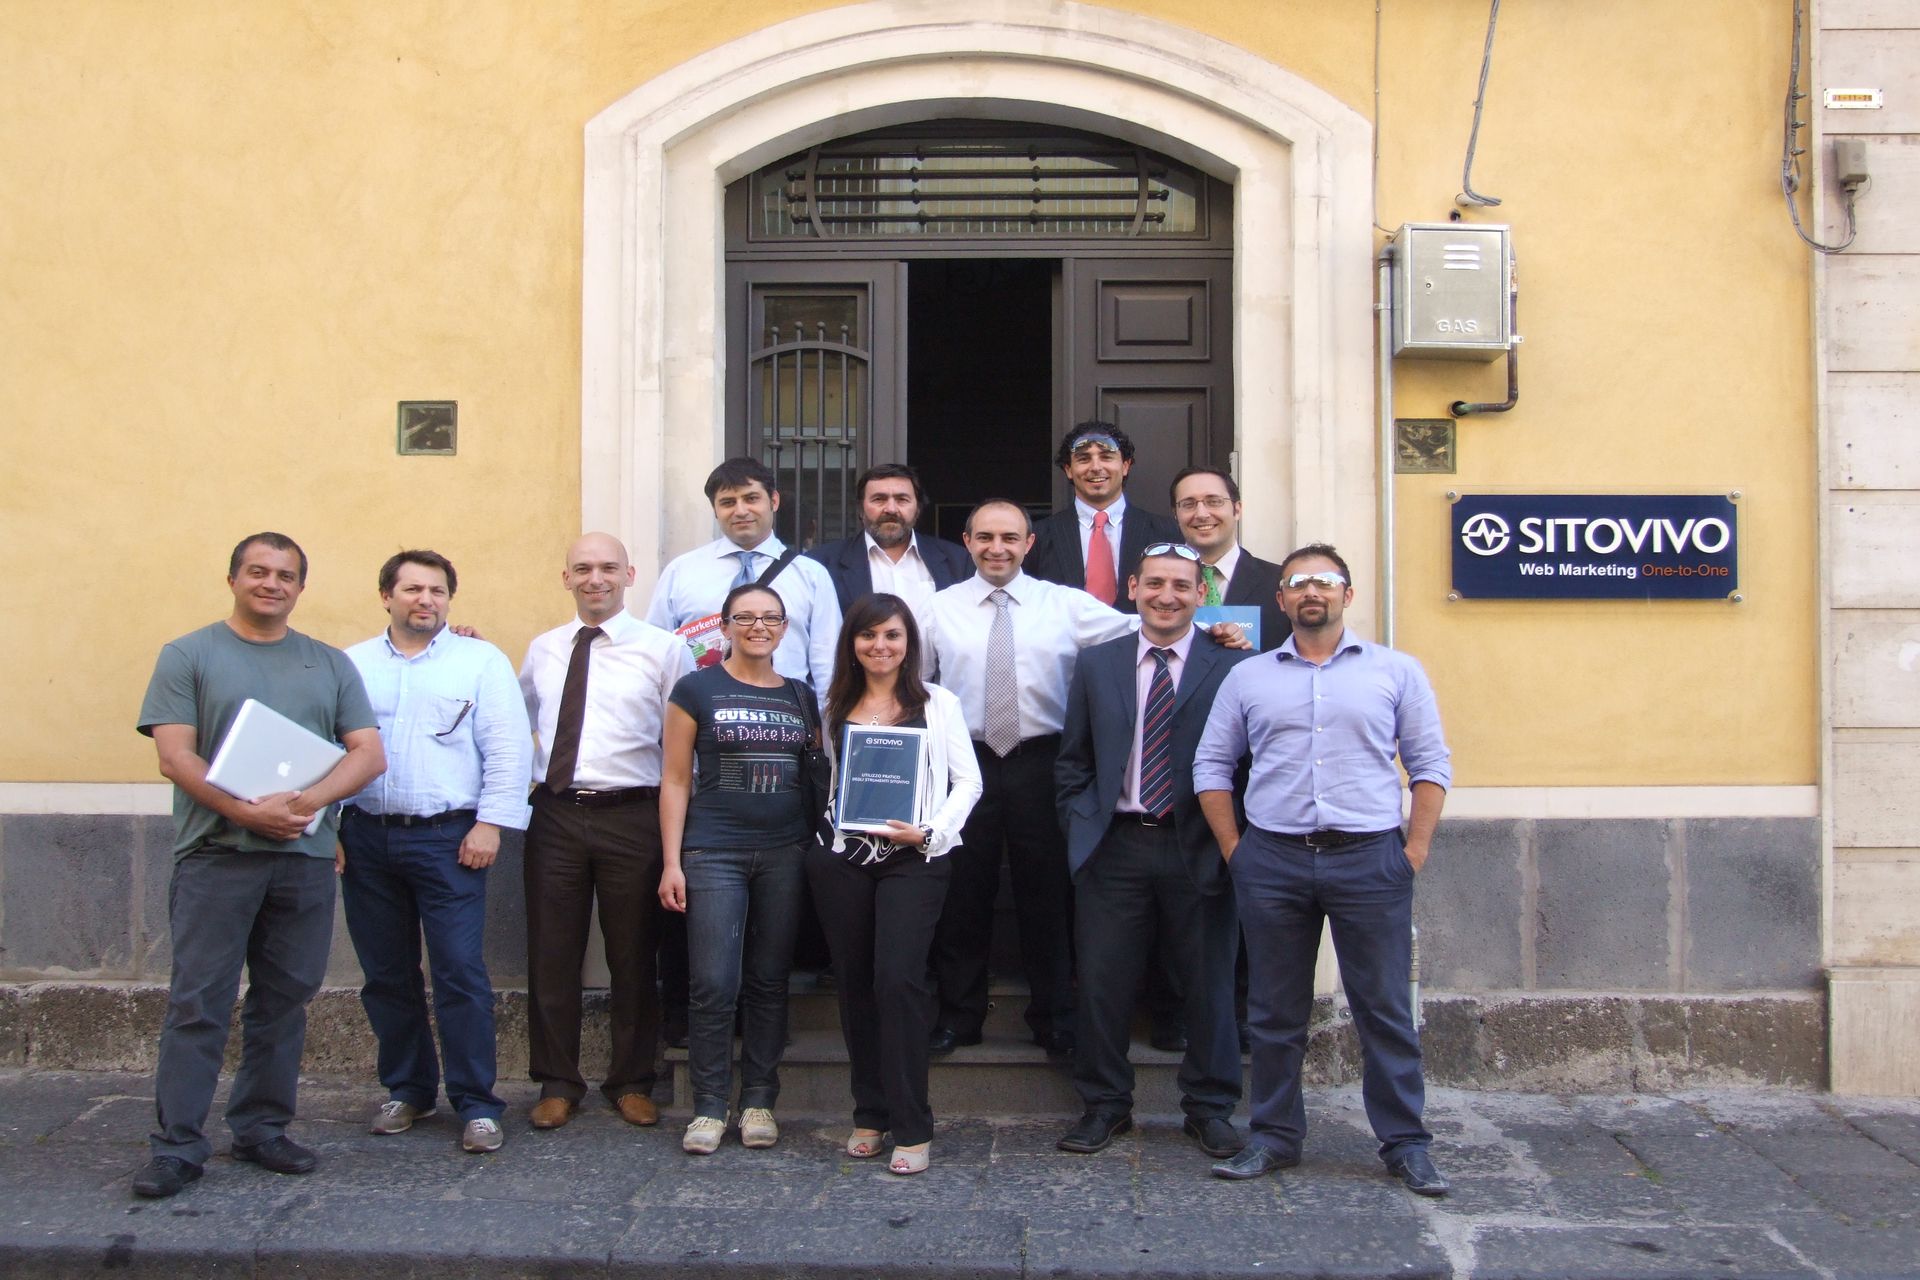 Das von der Firma SitoVivo in Giarre (Catania) im Jahr 2021 organisierte Seminar